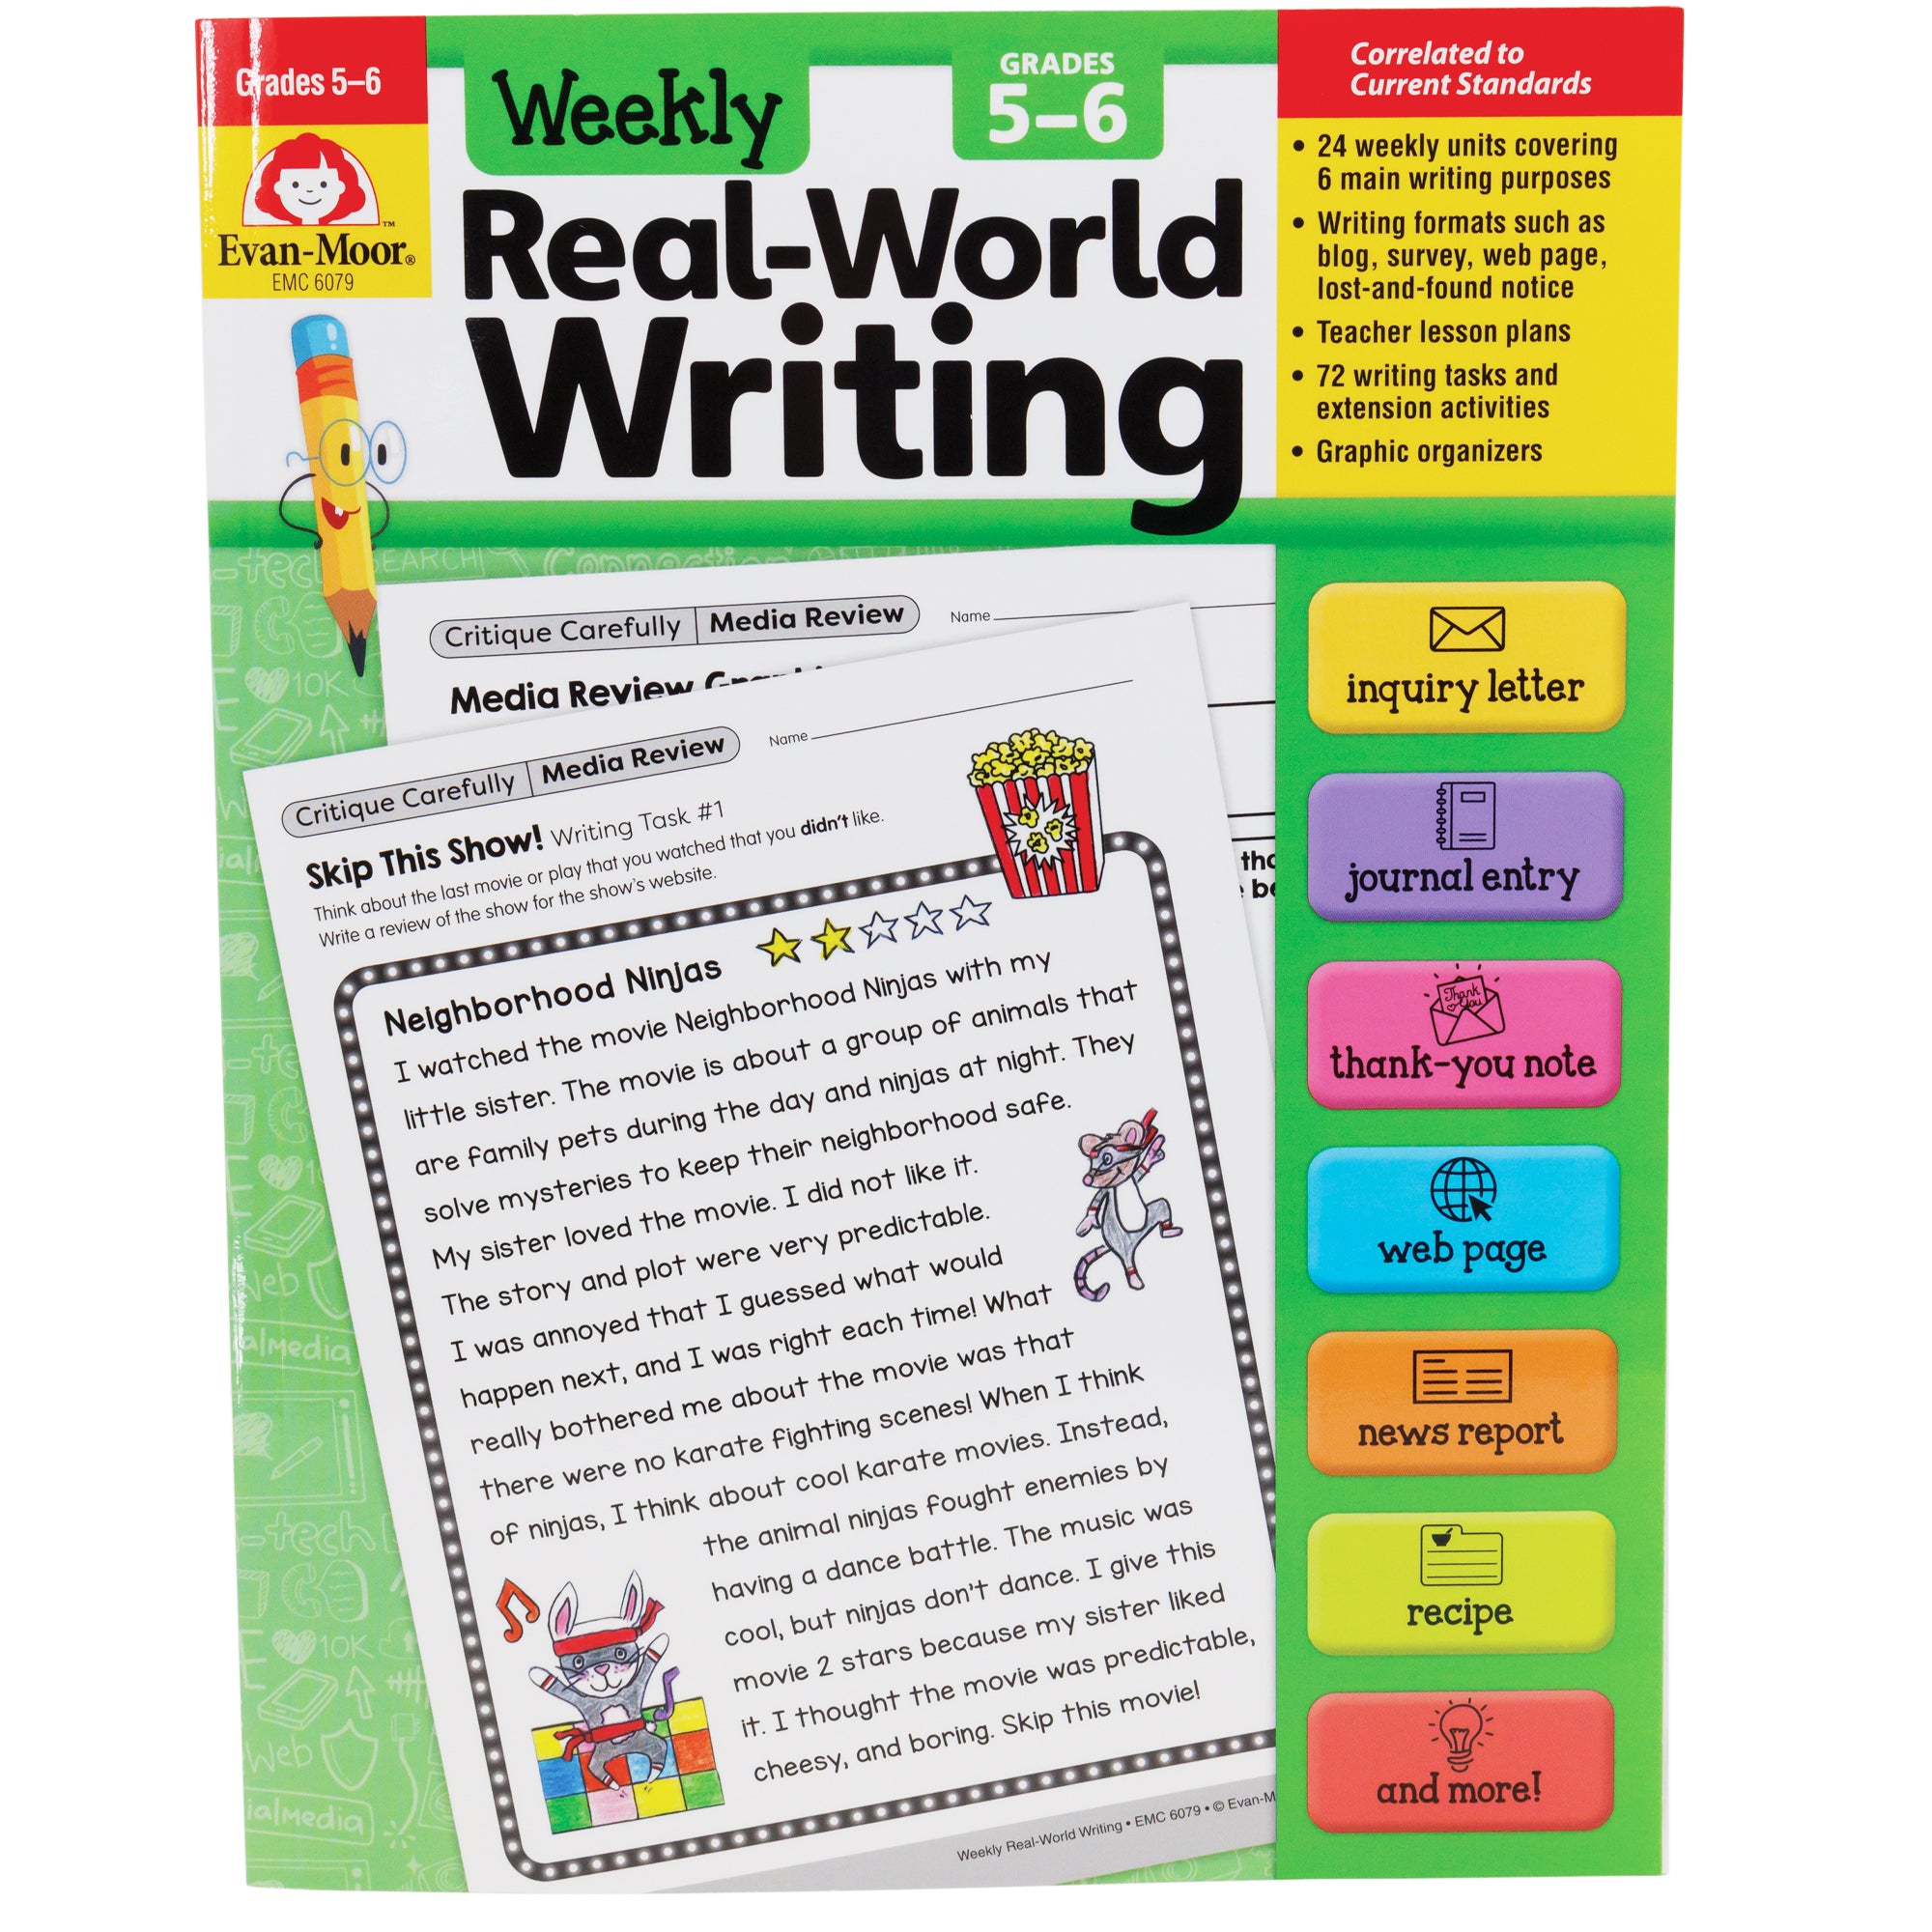 Weekly Real-World Writing Grades 5-6